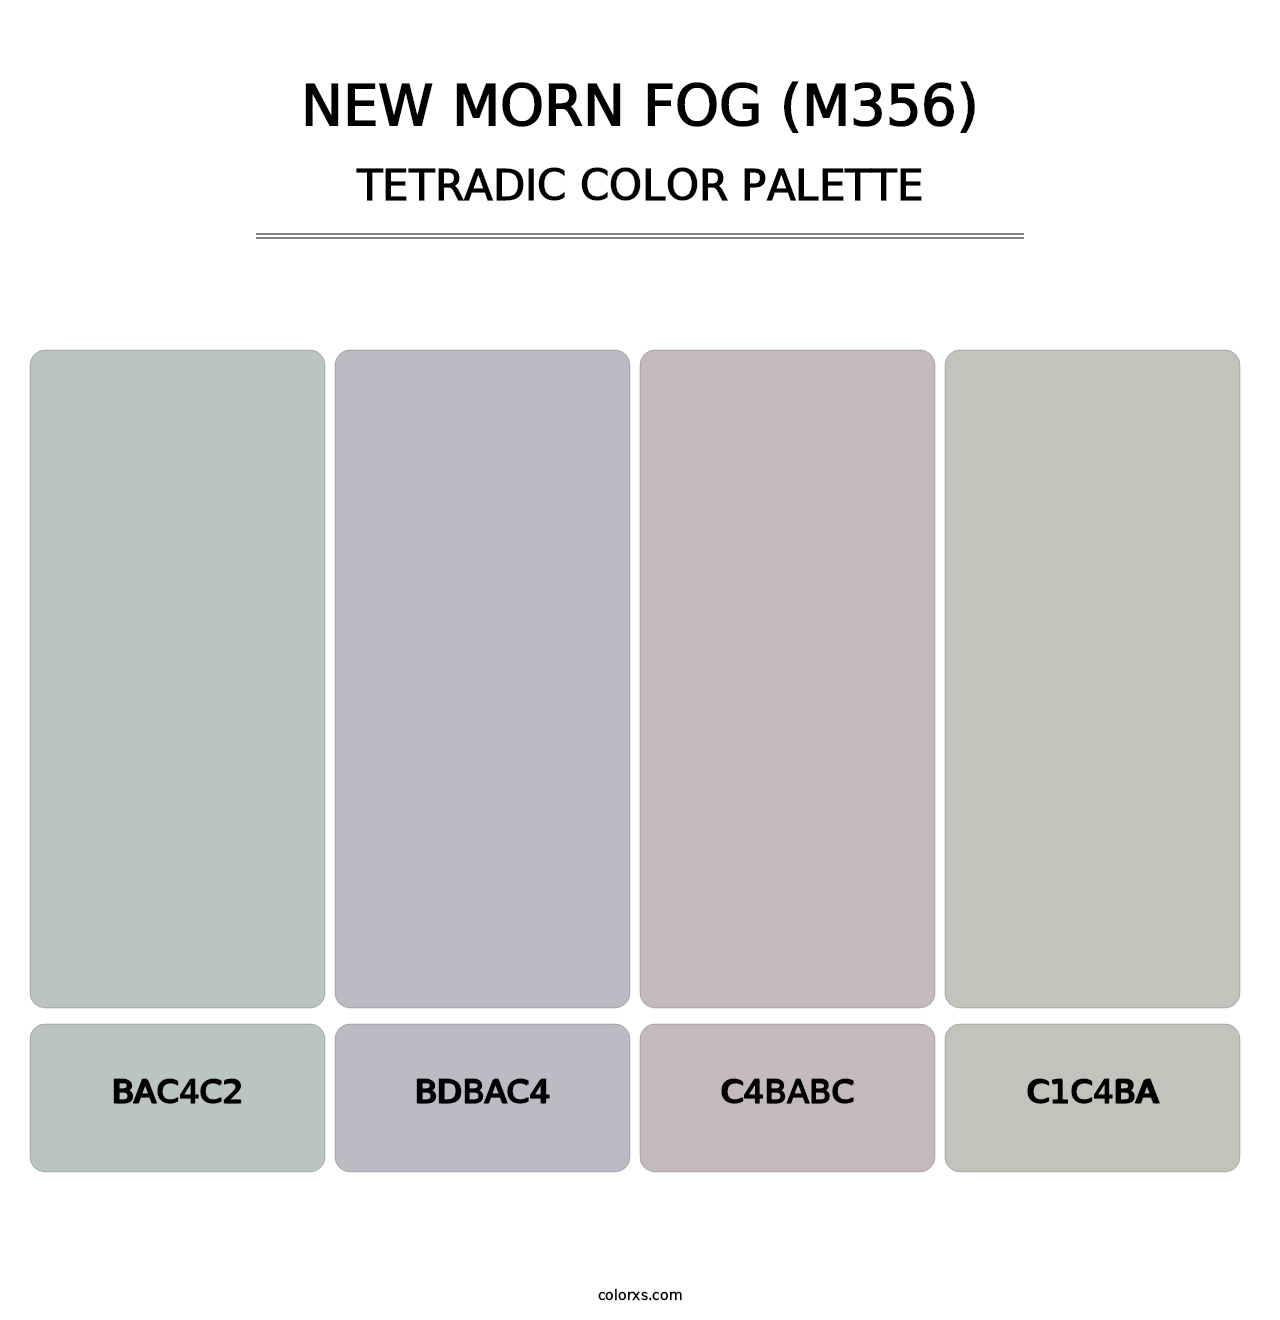 New Morn Fog (M356) - Tetradic Color Palette